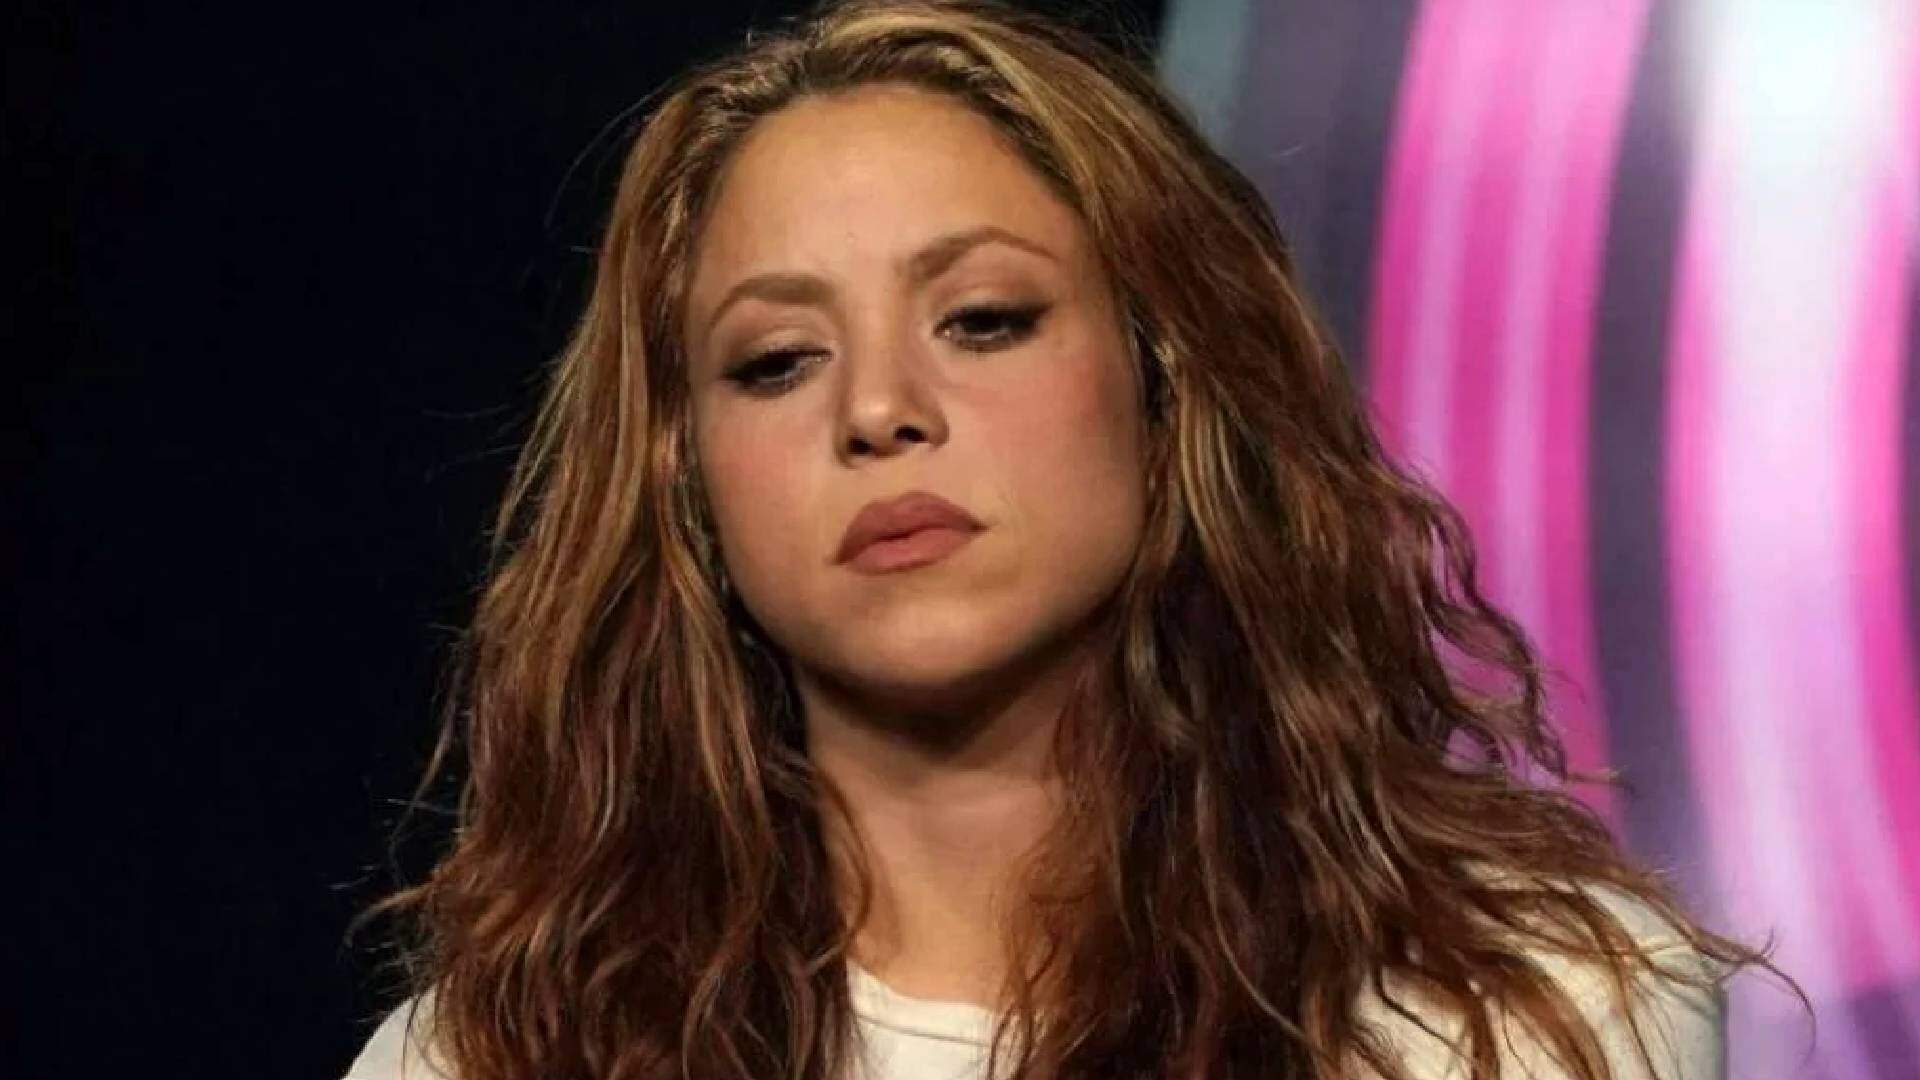 Nova polêmica de Shakira! Acusação grave contra artista vem à tona e deixa fãs perplexos após denúncia - Metropolitana FM